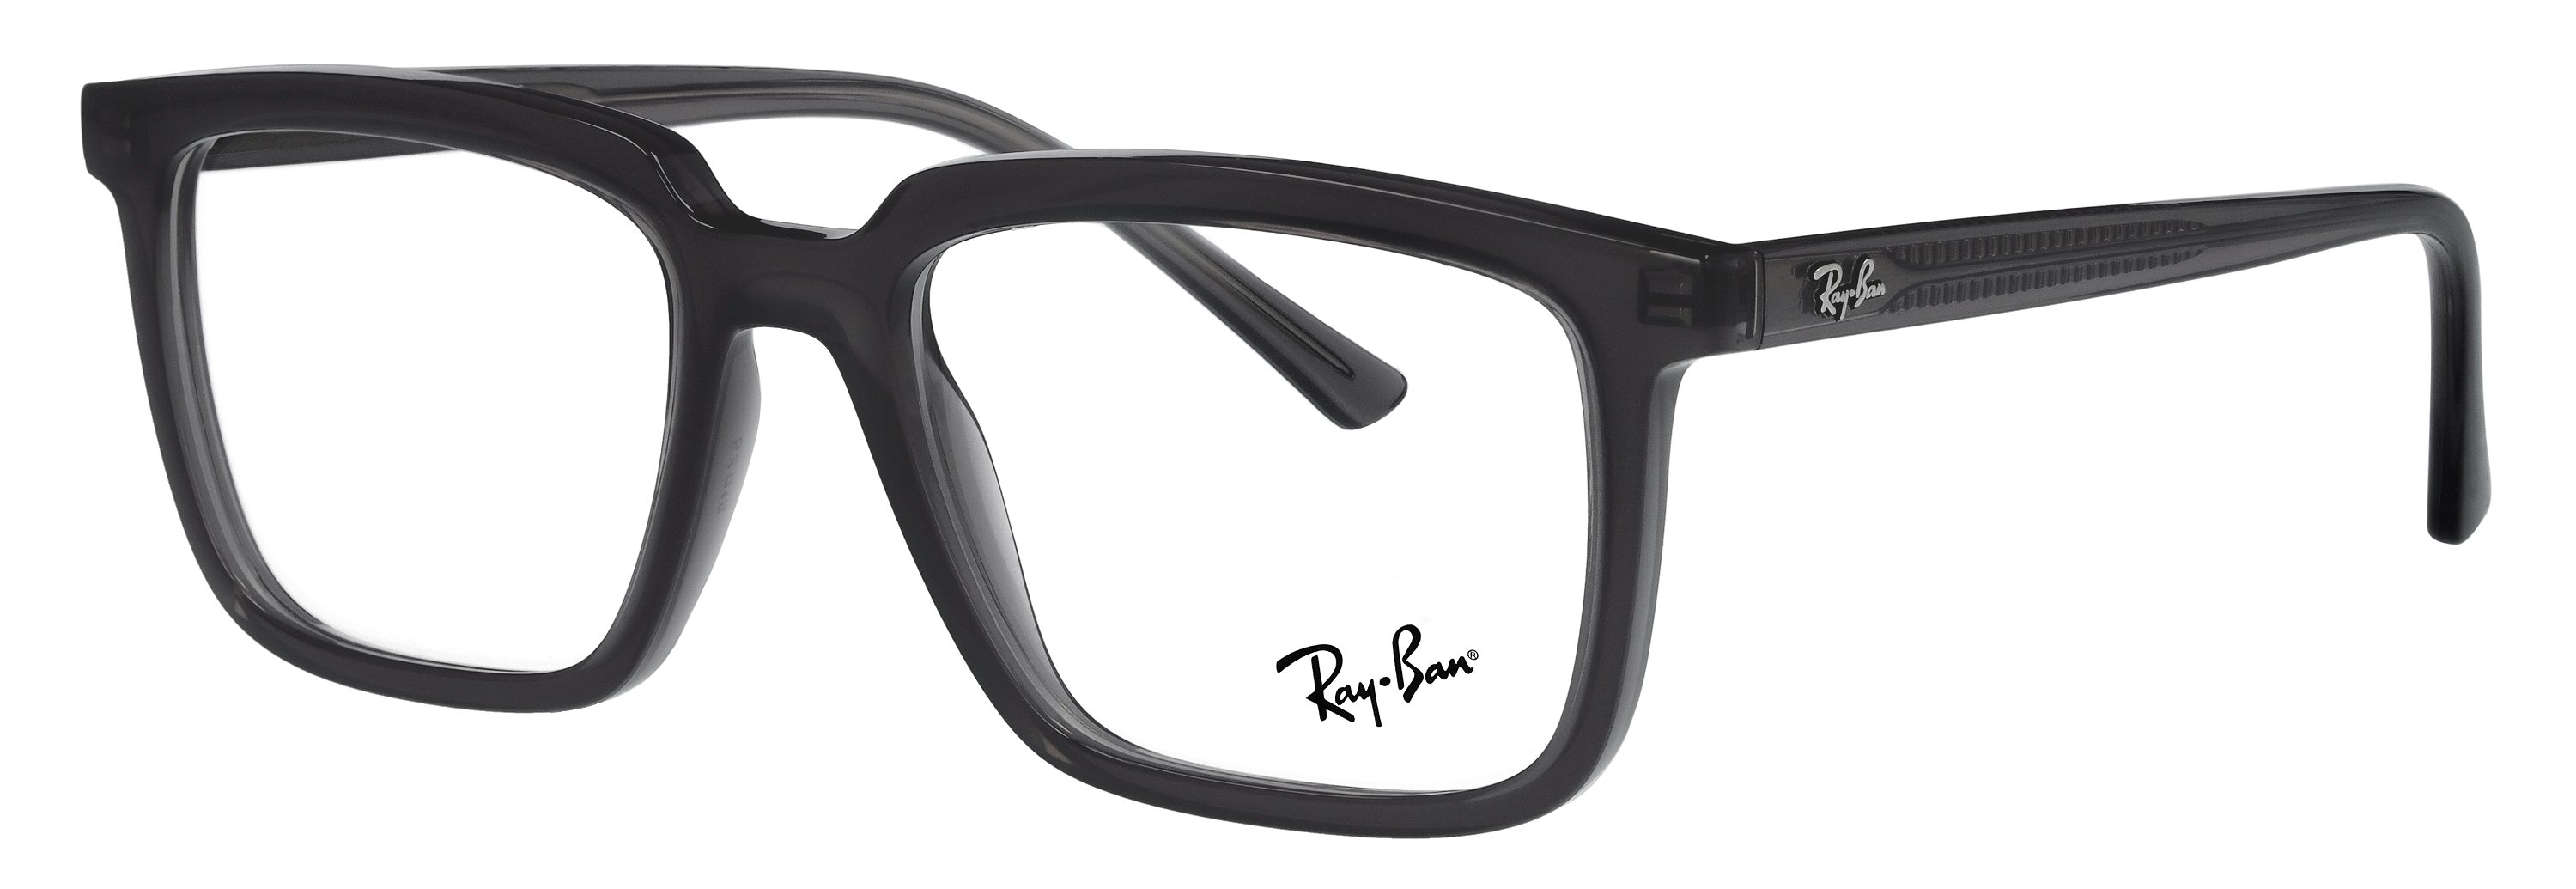 Das Bild zeigt die Korrektionsbrille RX7239 8257 von der Marke Ray Ban in Opal dunkelgrau.